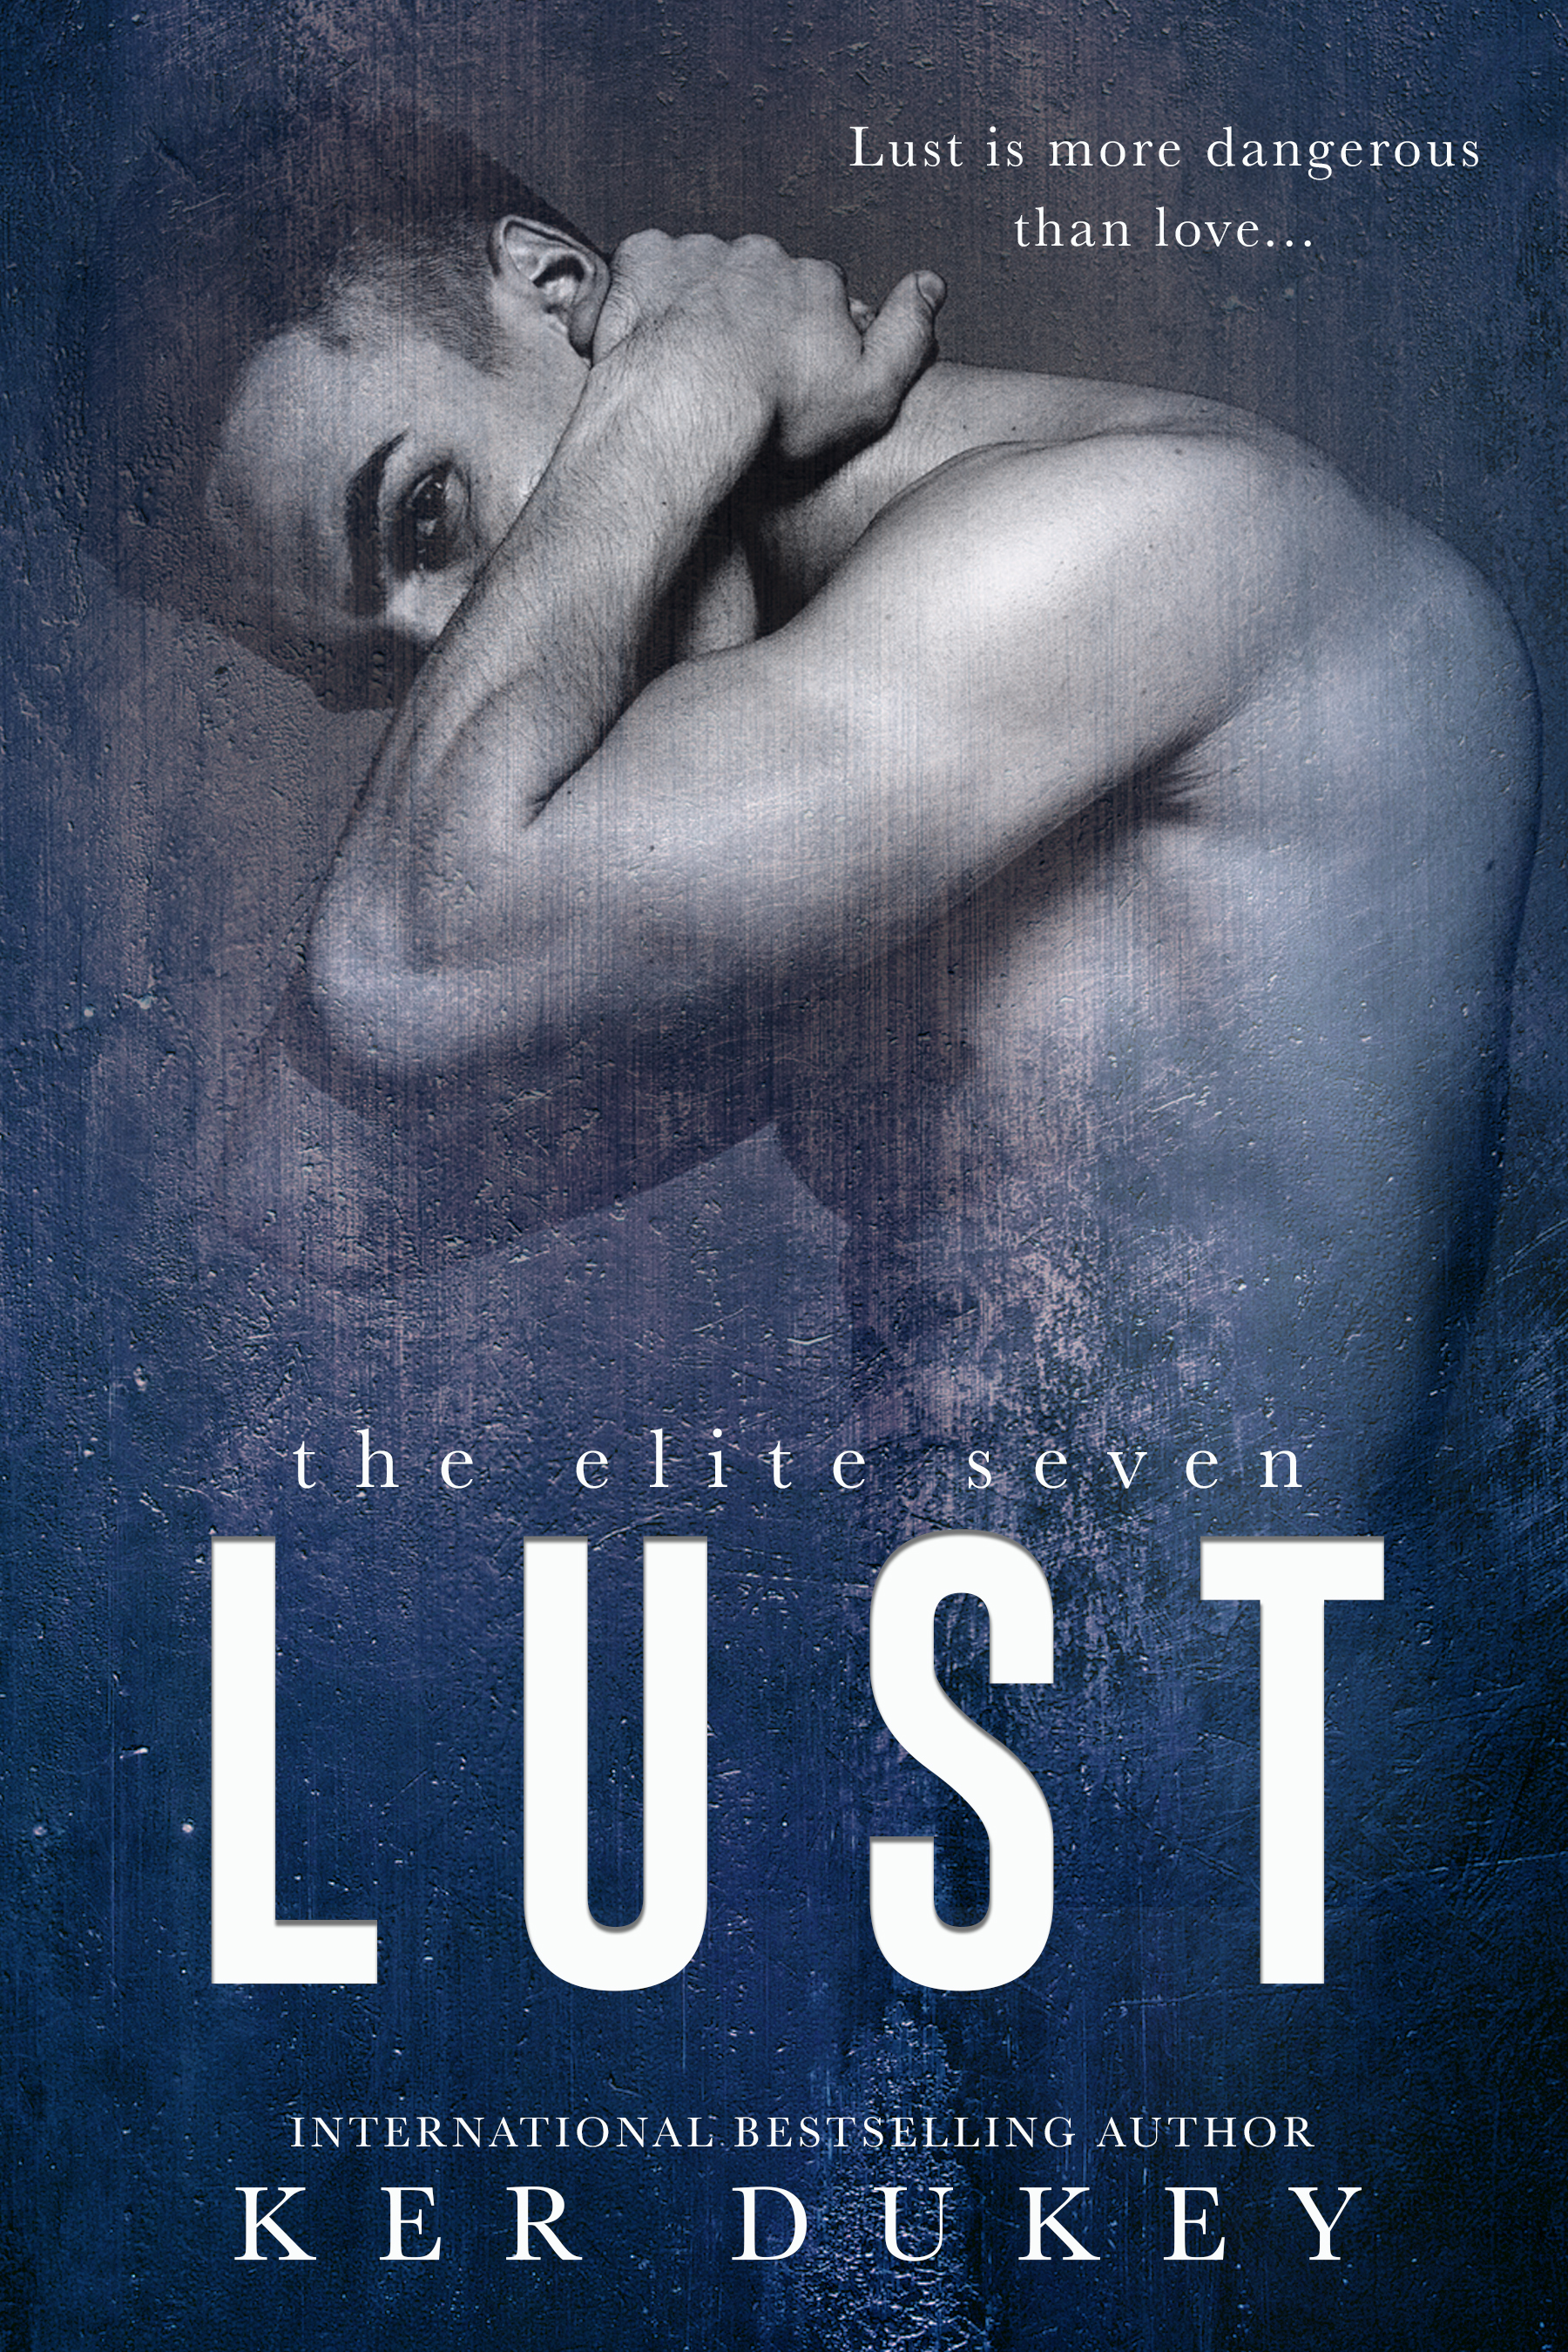 Lust by Ker Dukey [Release Blitz]